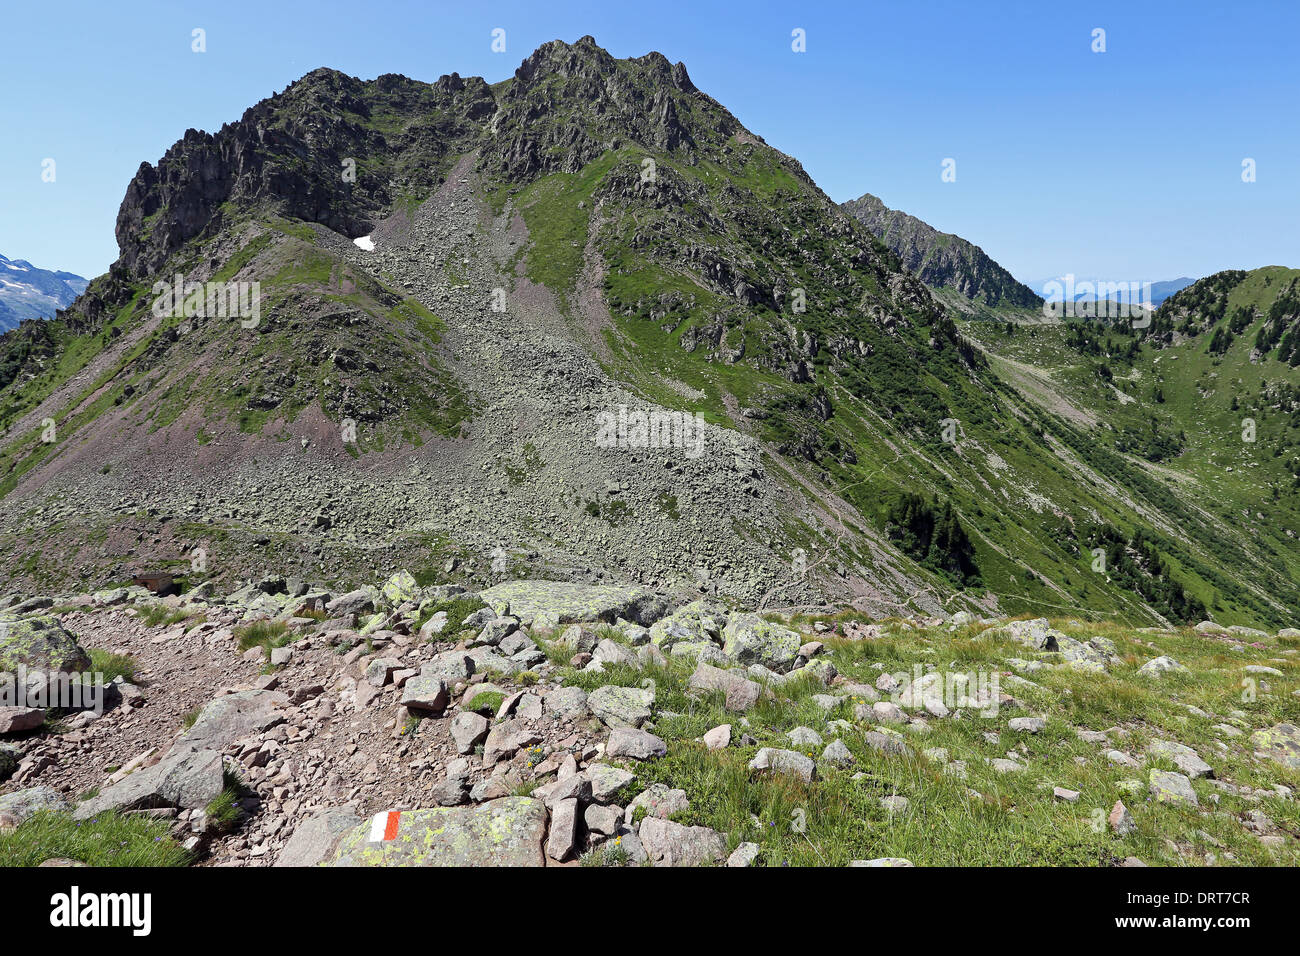 The Lagorai massif. Trentino. Stock Photo